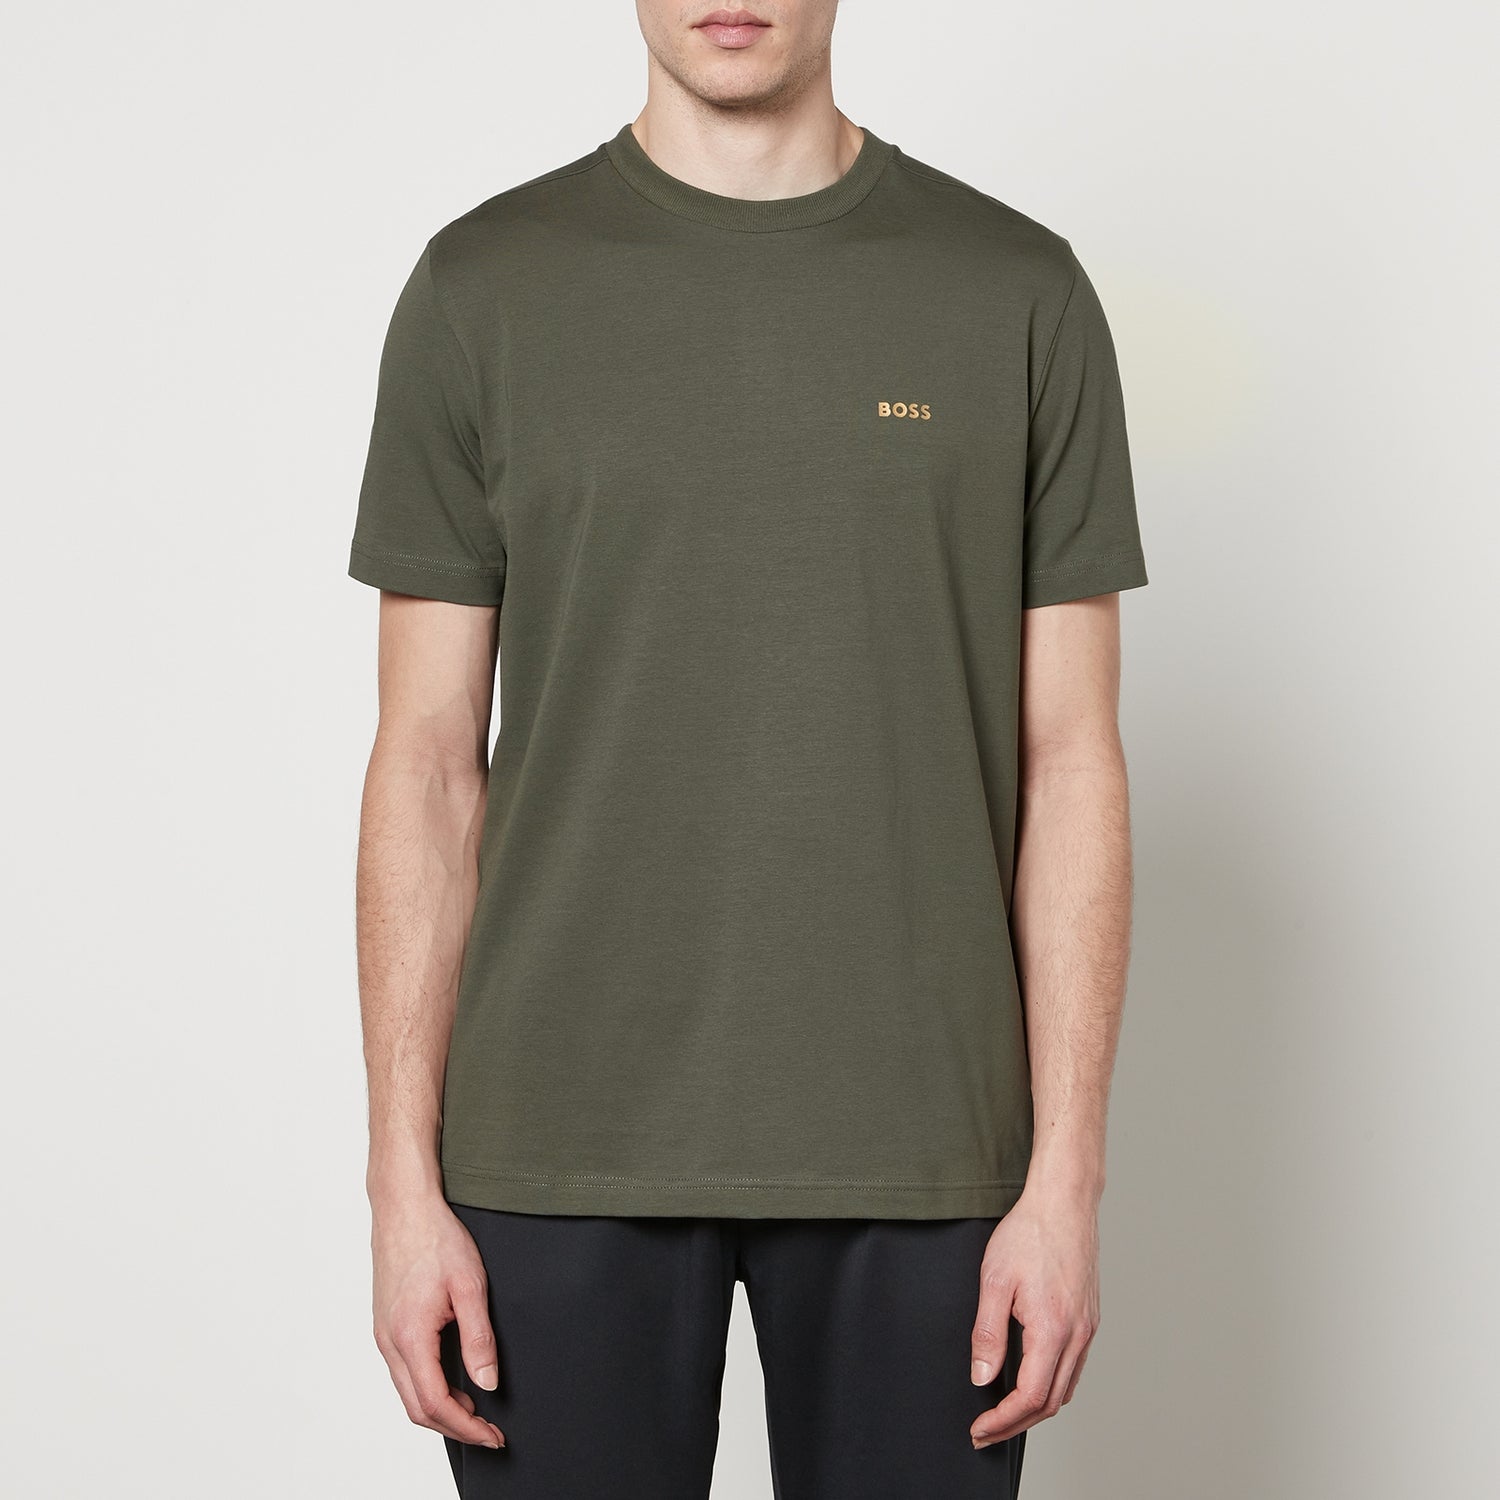 BOSS Green Tee Cotton-Jersey T-Shirt - S